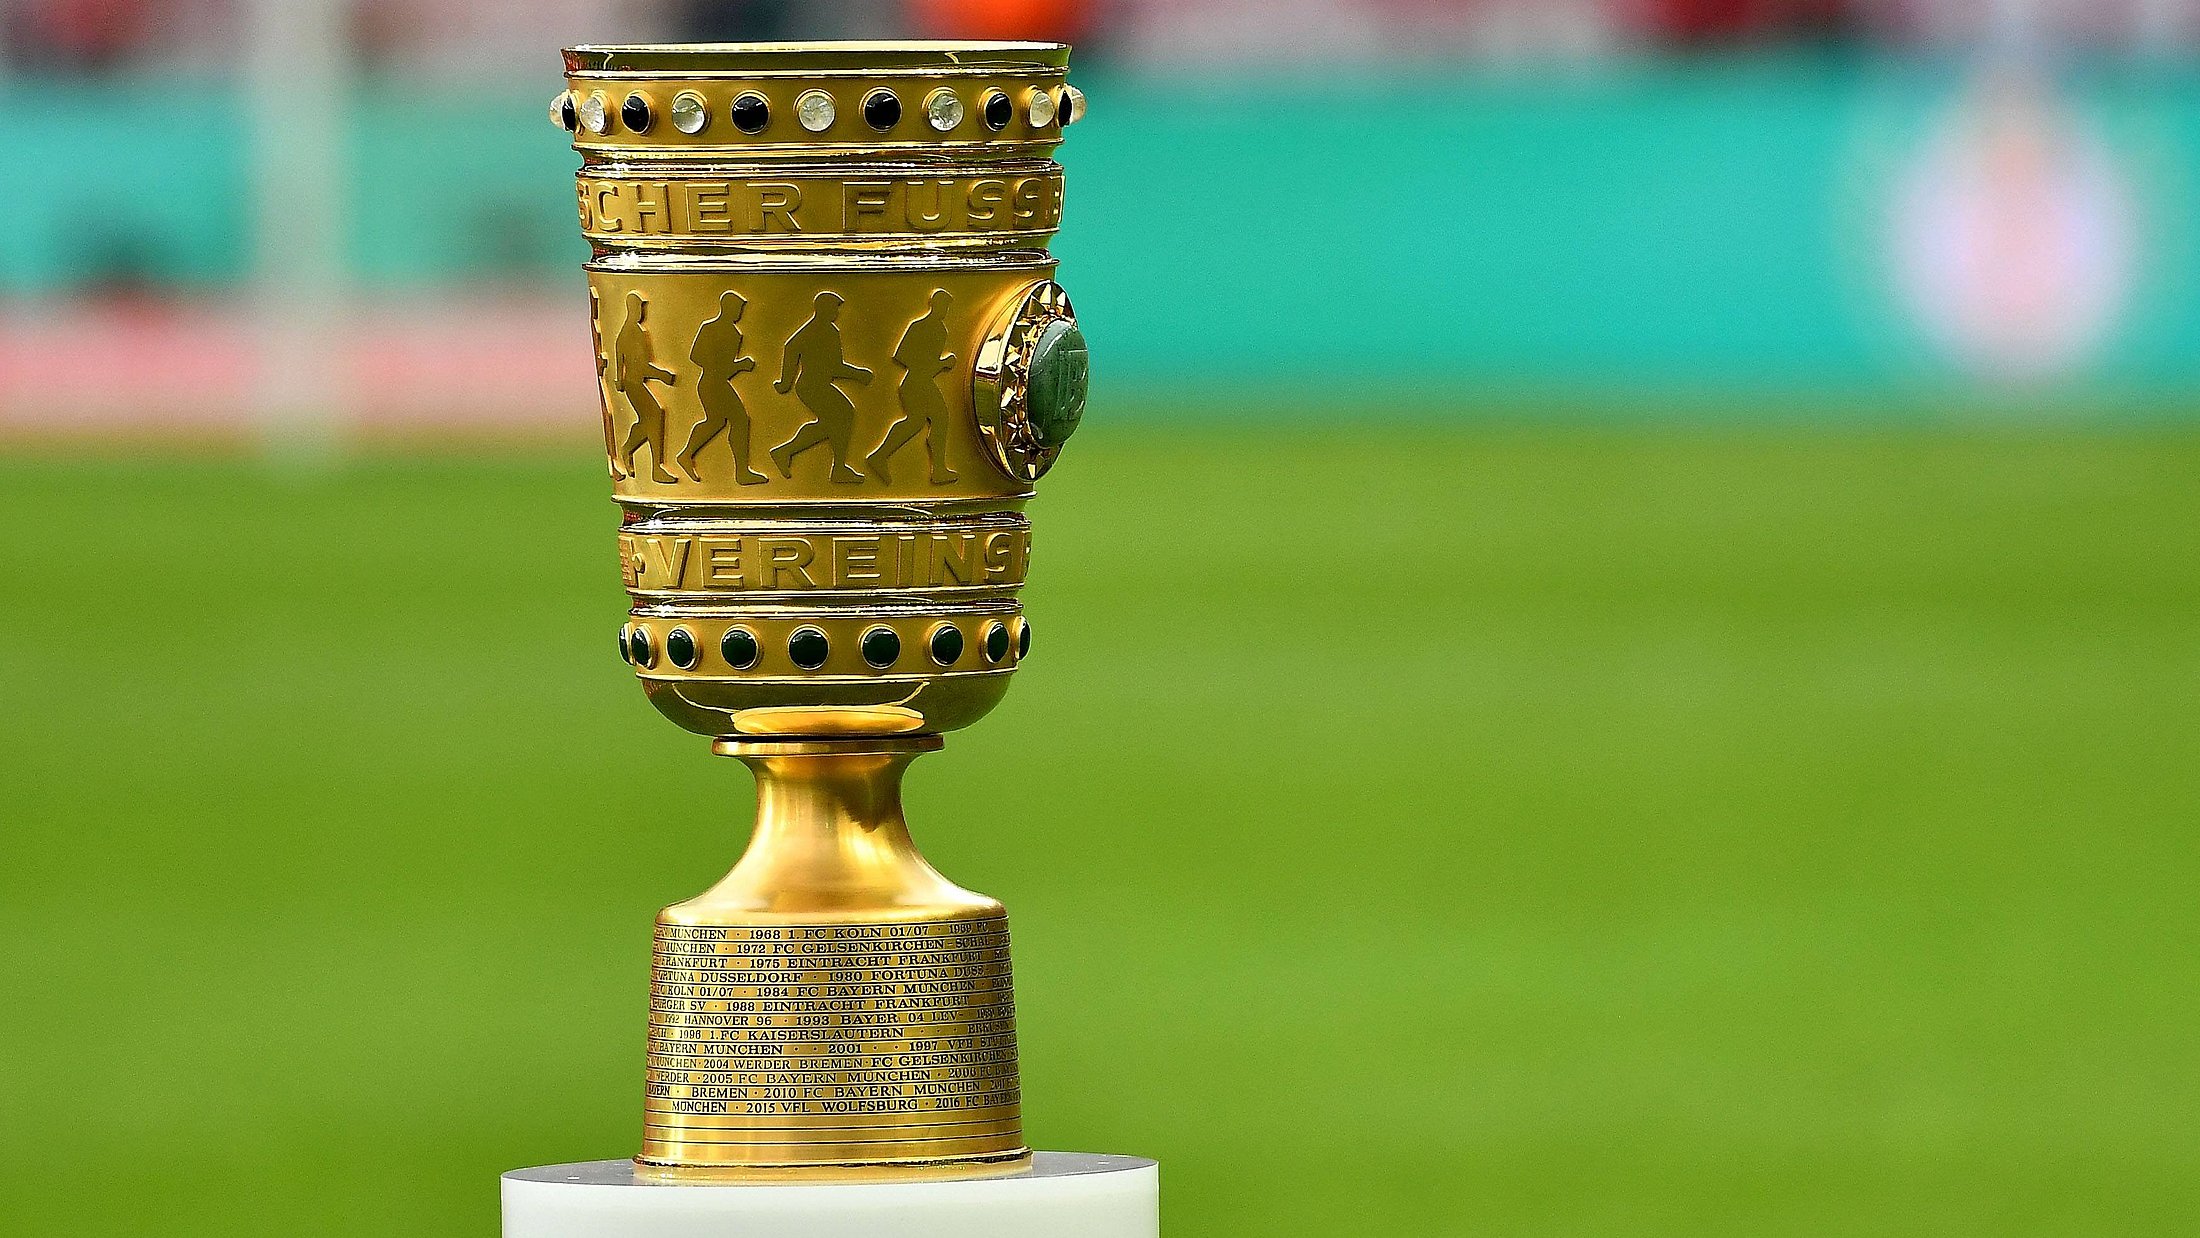 Der DFB Pokal auf einem Sockel in einem Fußballstadion